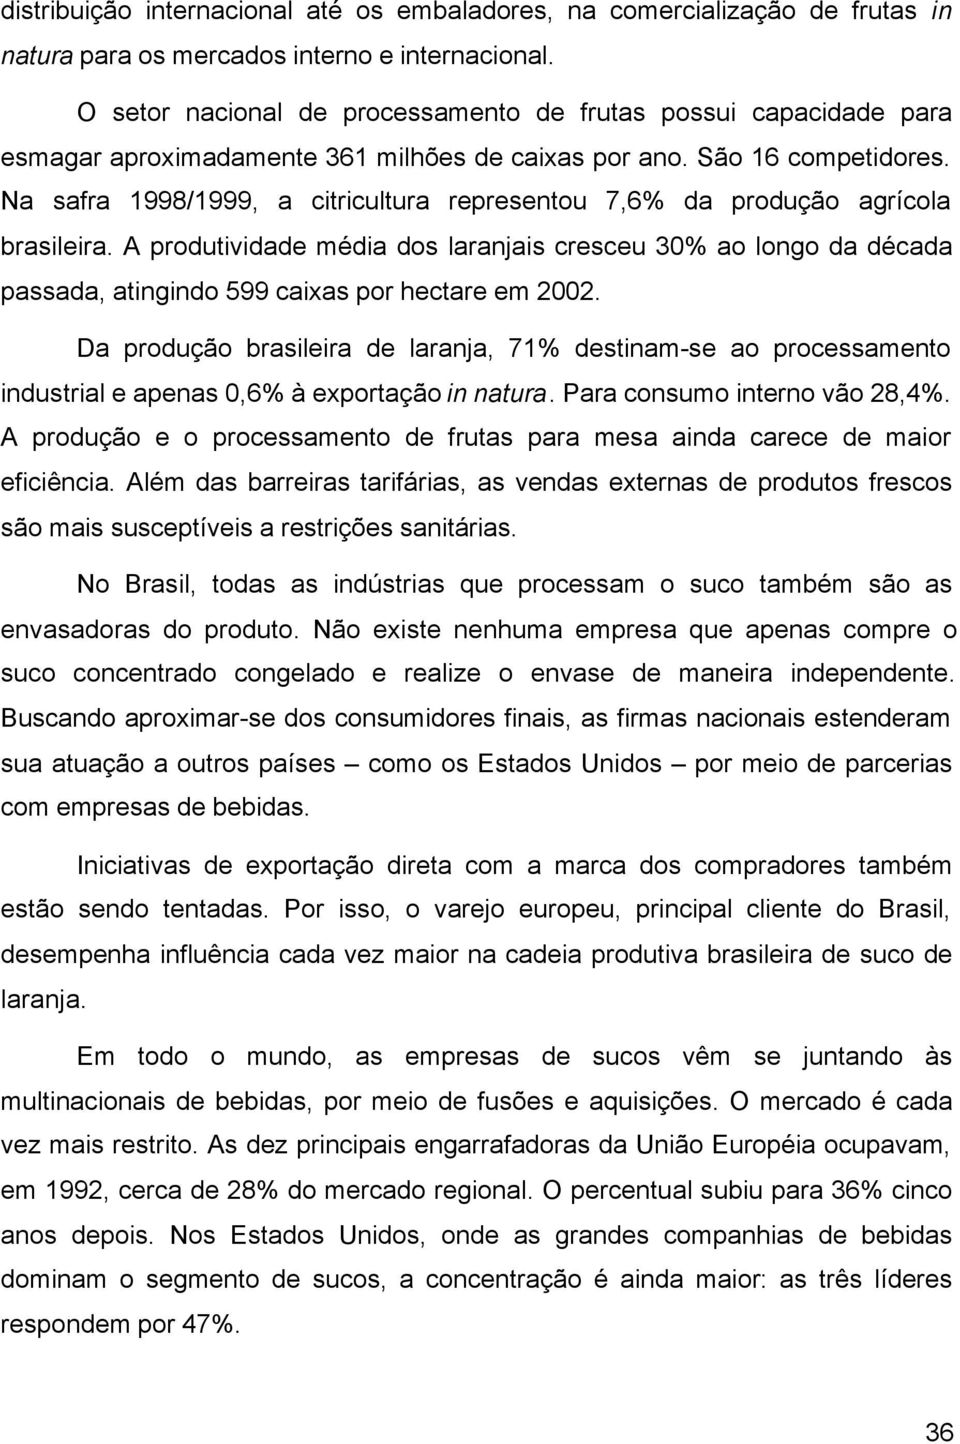 Na safra 1998/1999, a citricultura representou 7,6% da produção agrícola brasileira.